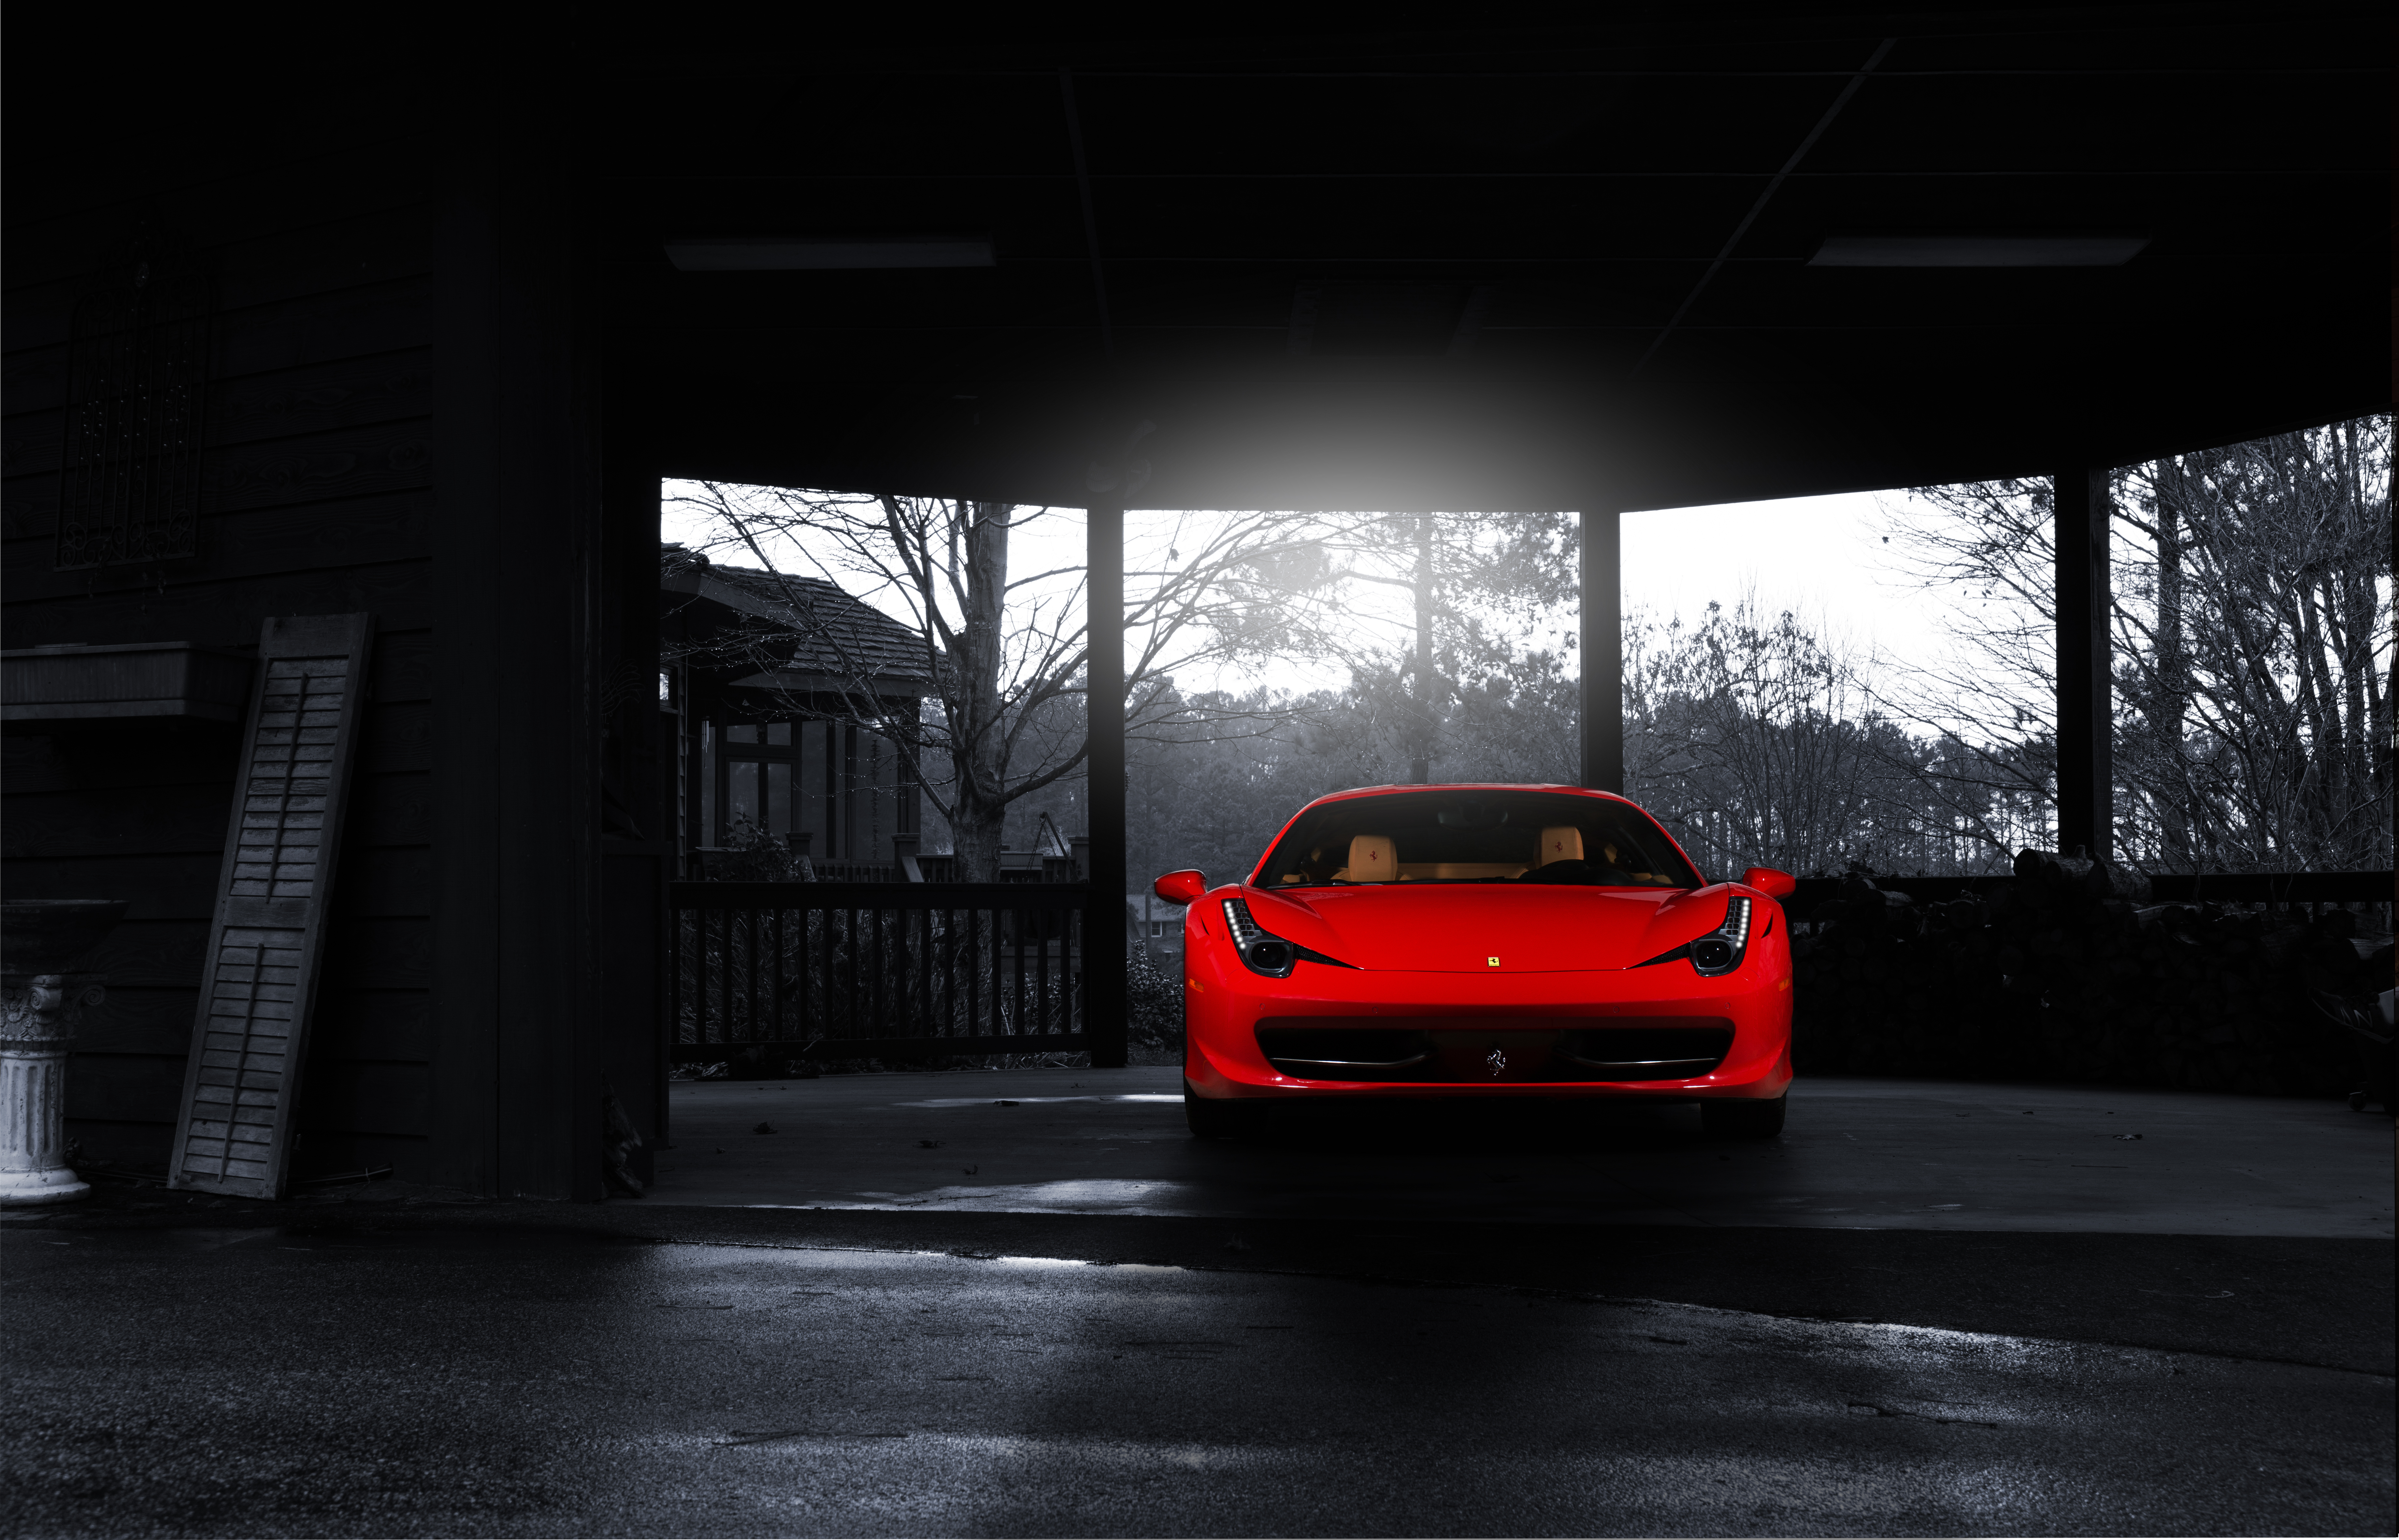 27 Ferrari 458 HD Wallpapers | Backgrounds - Wallpaper Abyss